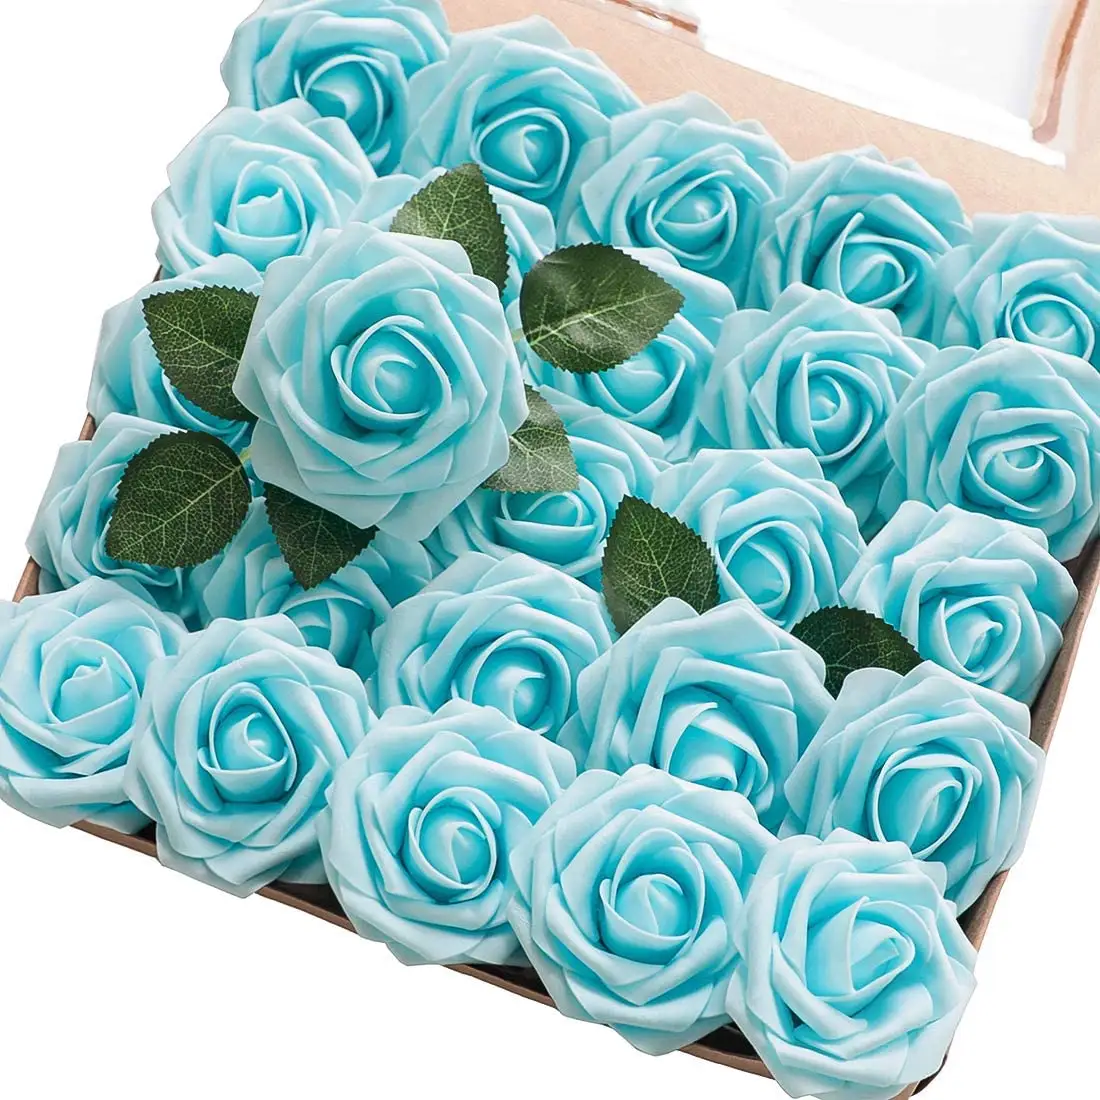 Scatola di fiori artificiali rose in schiuma blu acqua dall'aspetto reale con steli per mazzi di nozze fai da te centrotavola per addio al nubilato